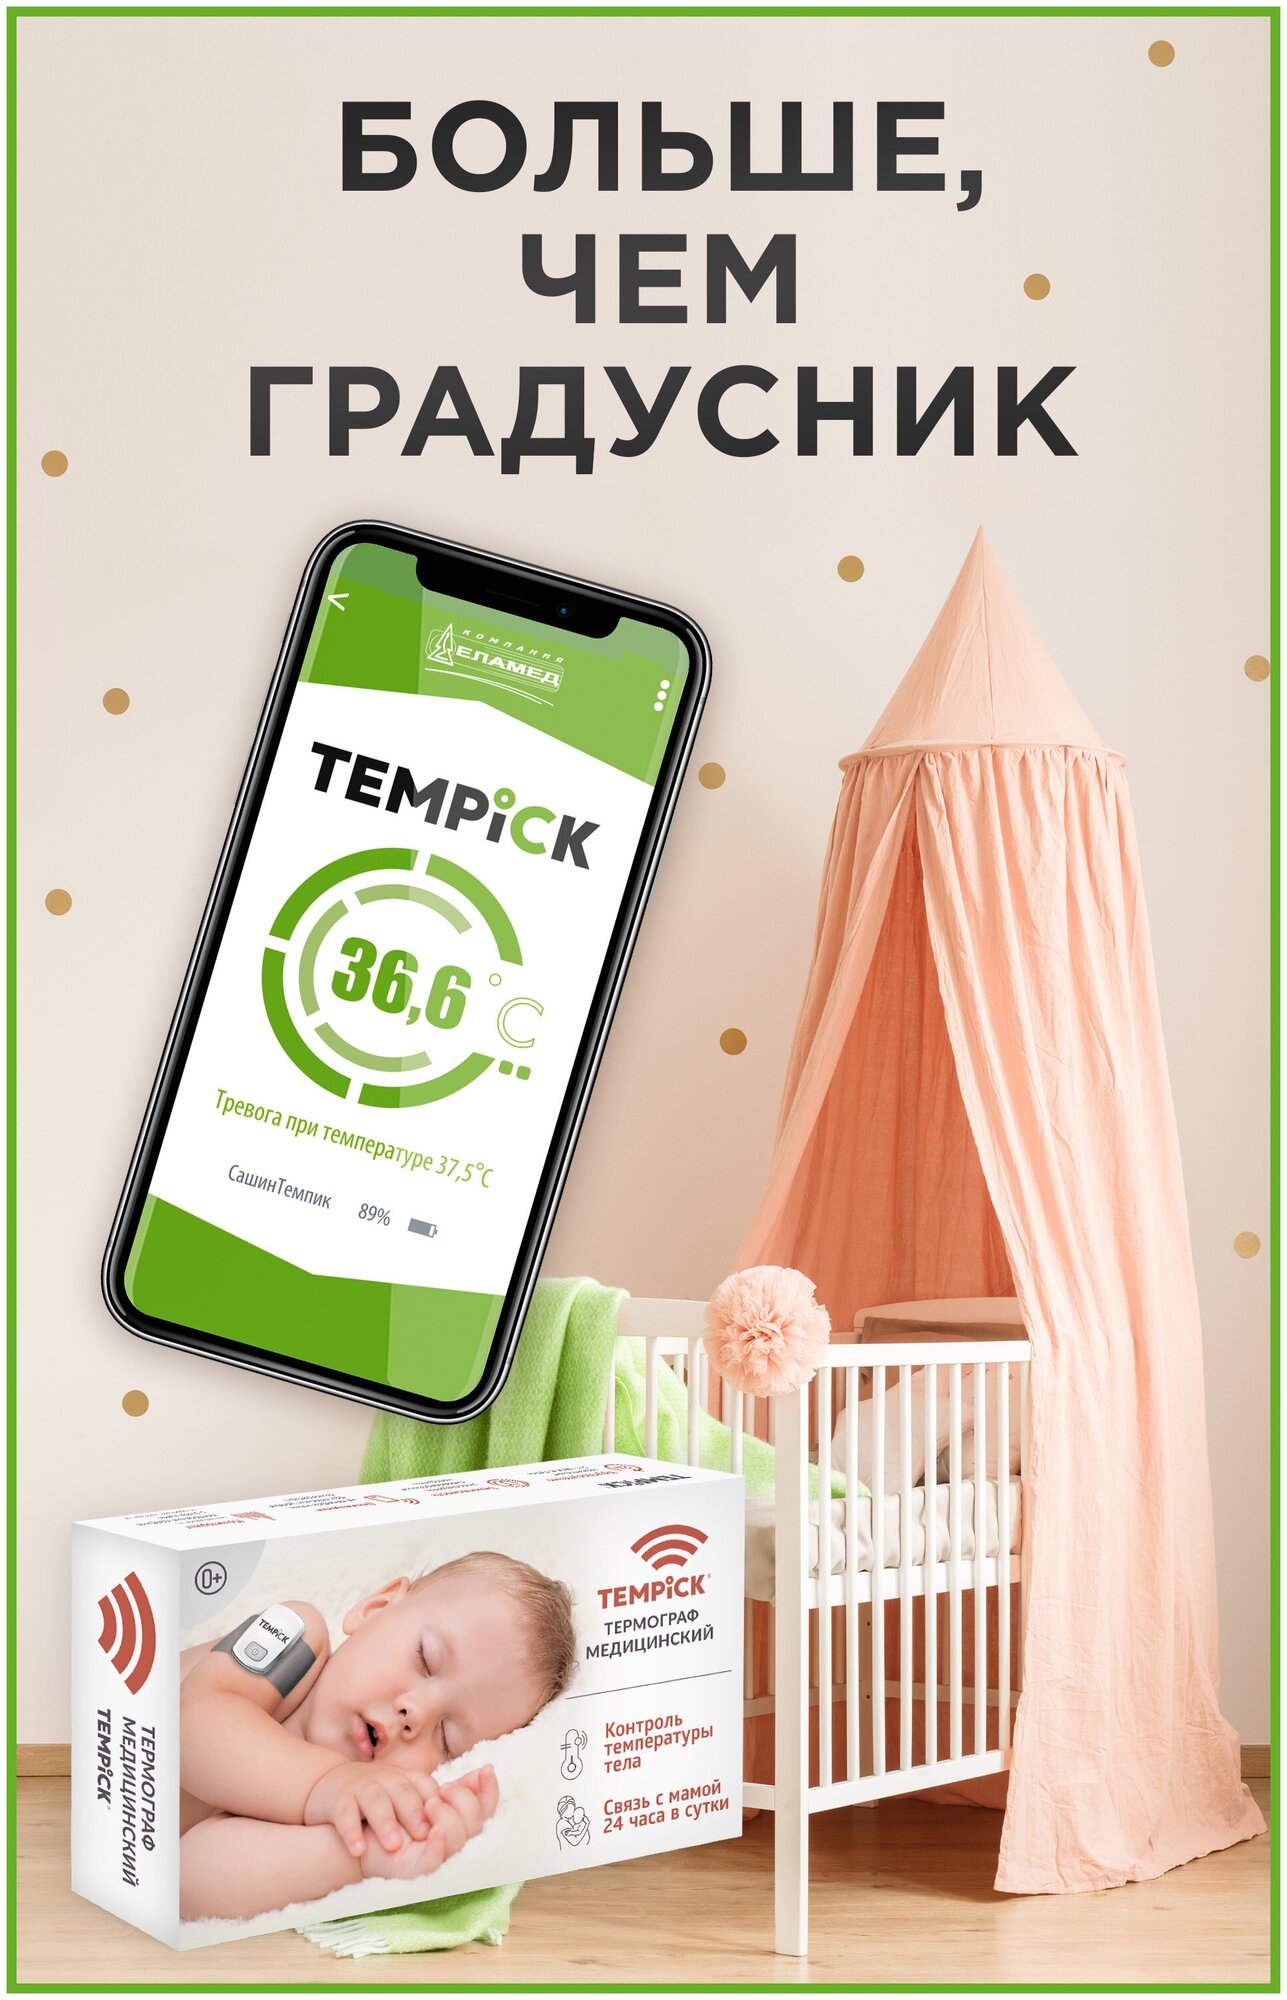 TEMPICK (интеллектуальный термограф для мониторинга температуры тела ребенка темпик)